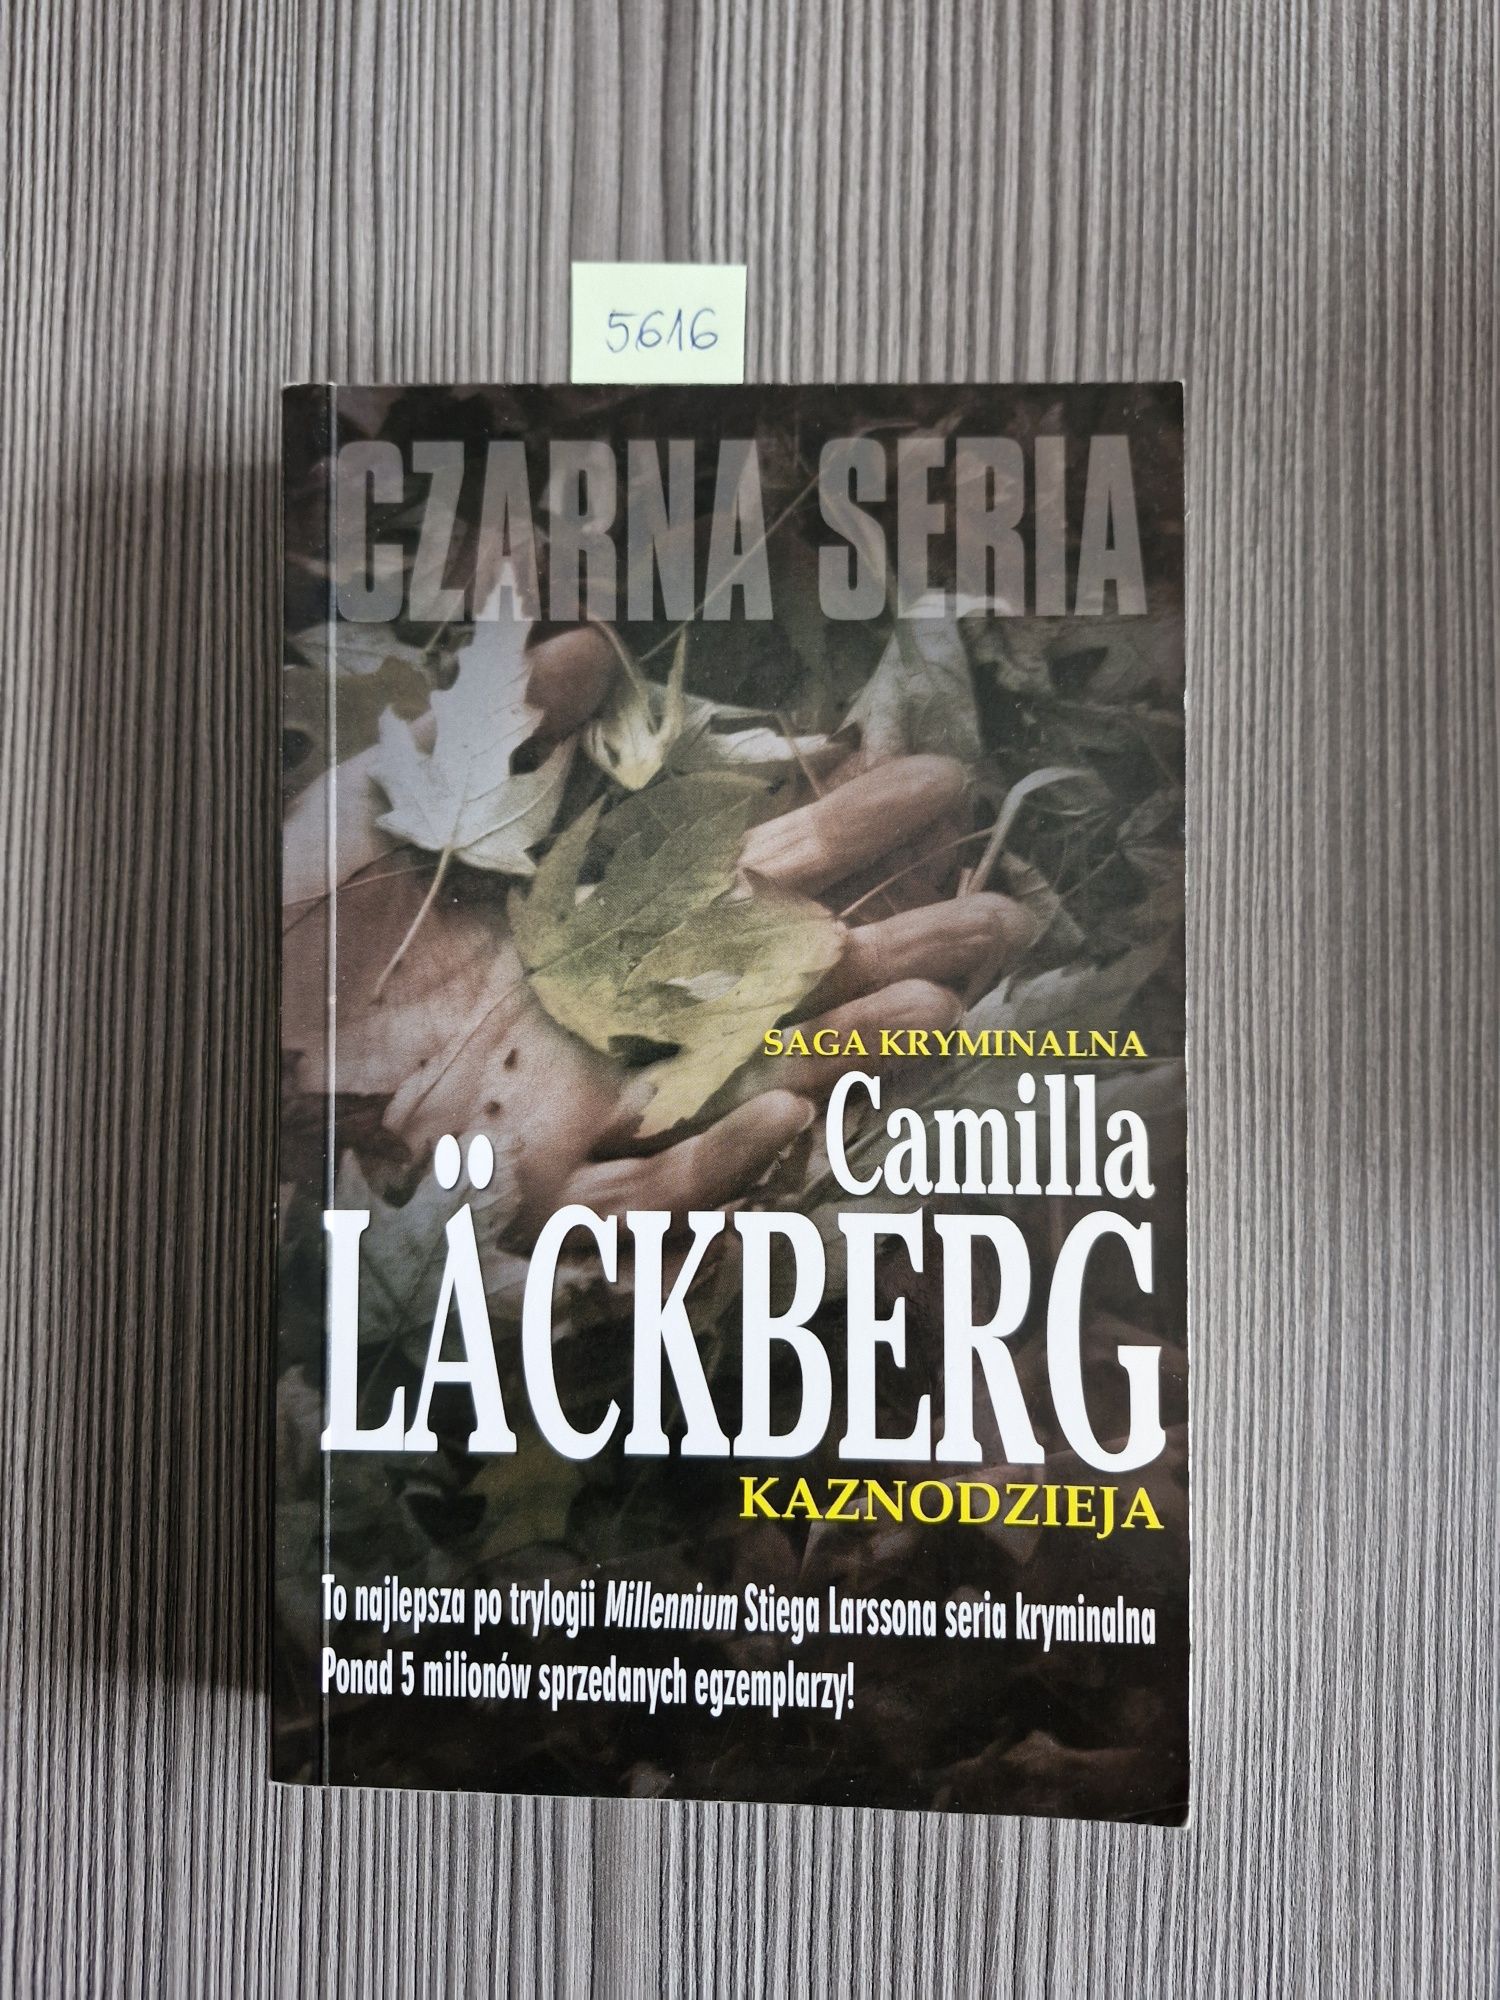 5616. "Kaznodzieja" Camilla Lackberg